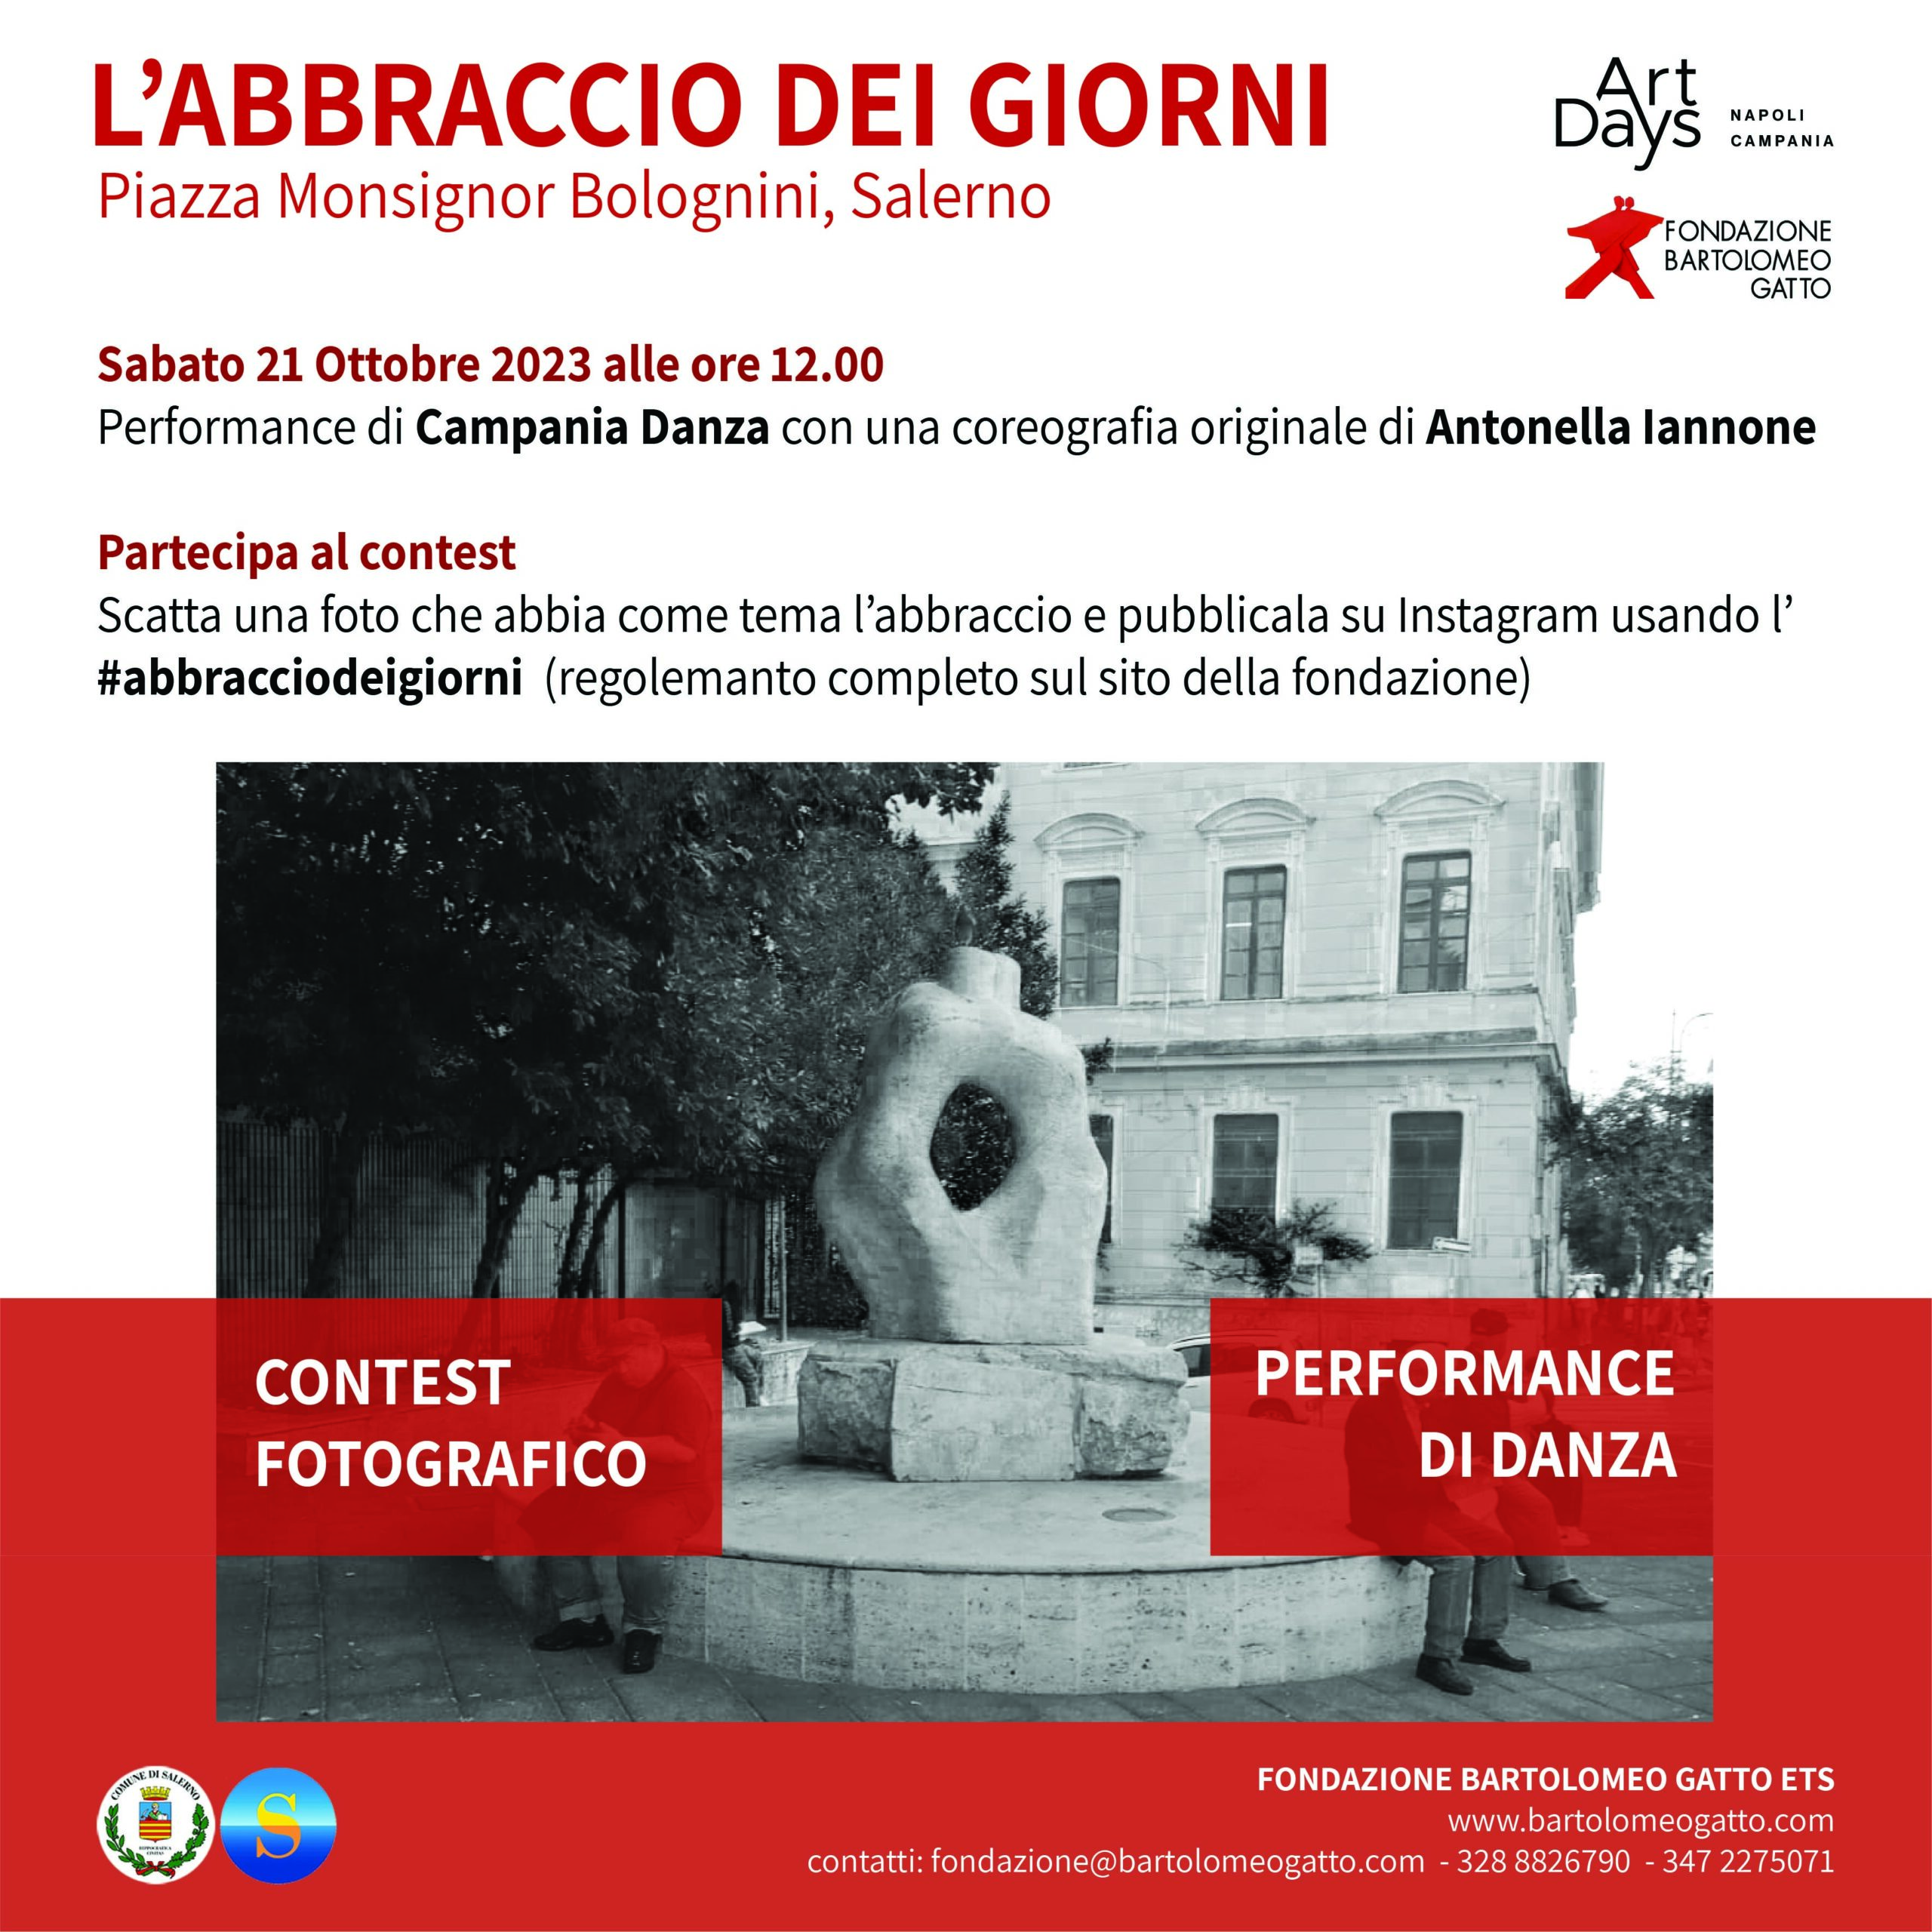 Salerno: Art Days, eventi con Fondazione Gatto